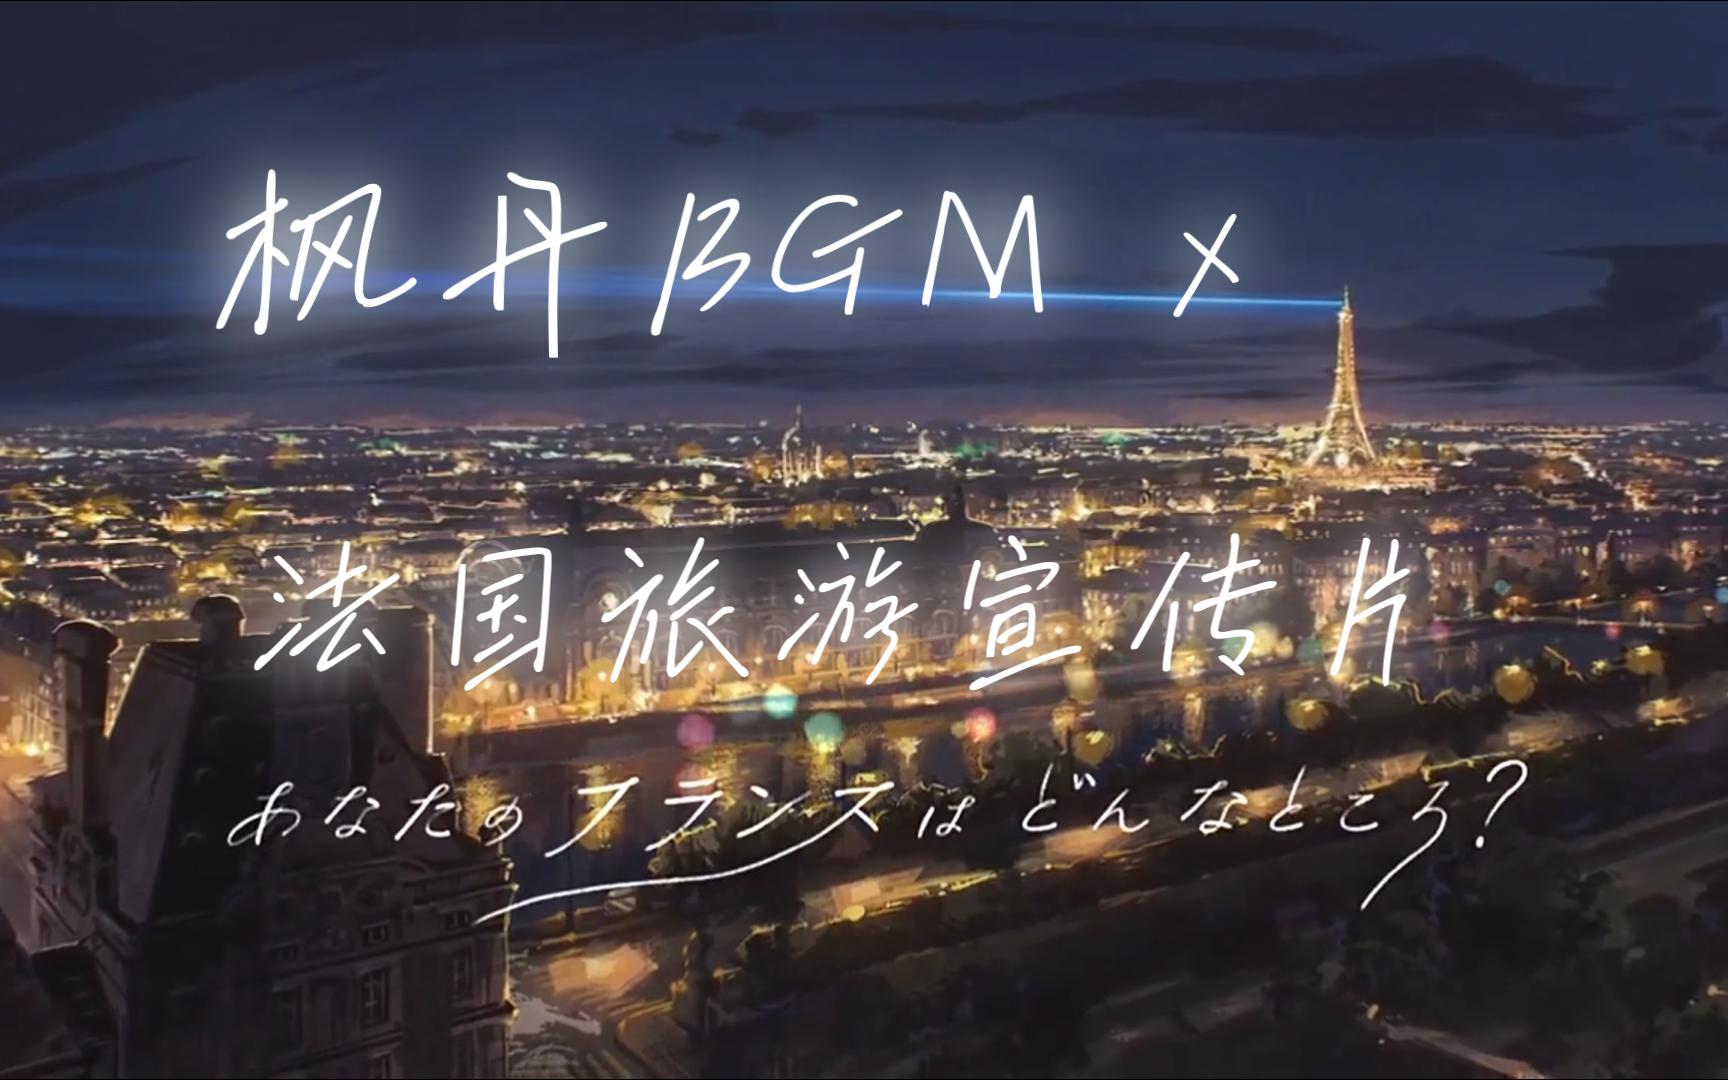 原神枫丹「致终幕的欢宴」BGM x 法国旅游局日本动画宣传片